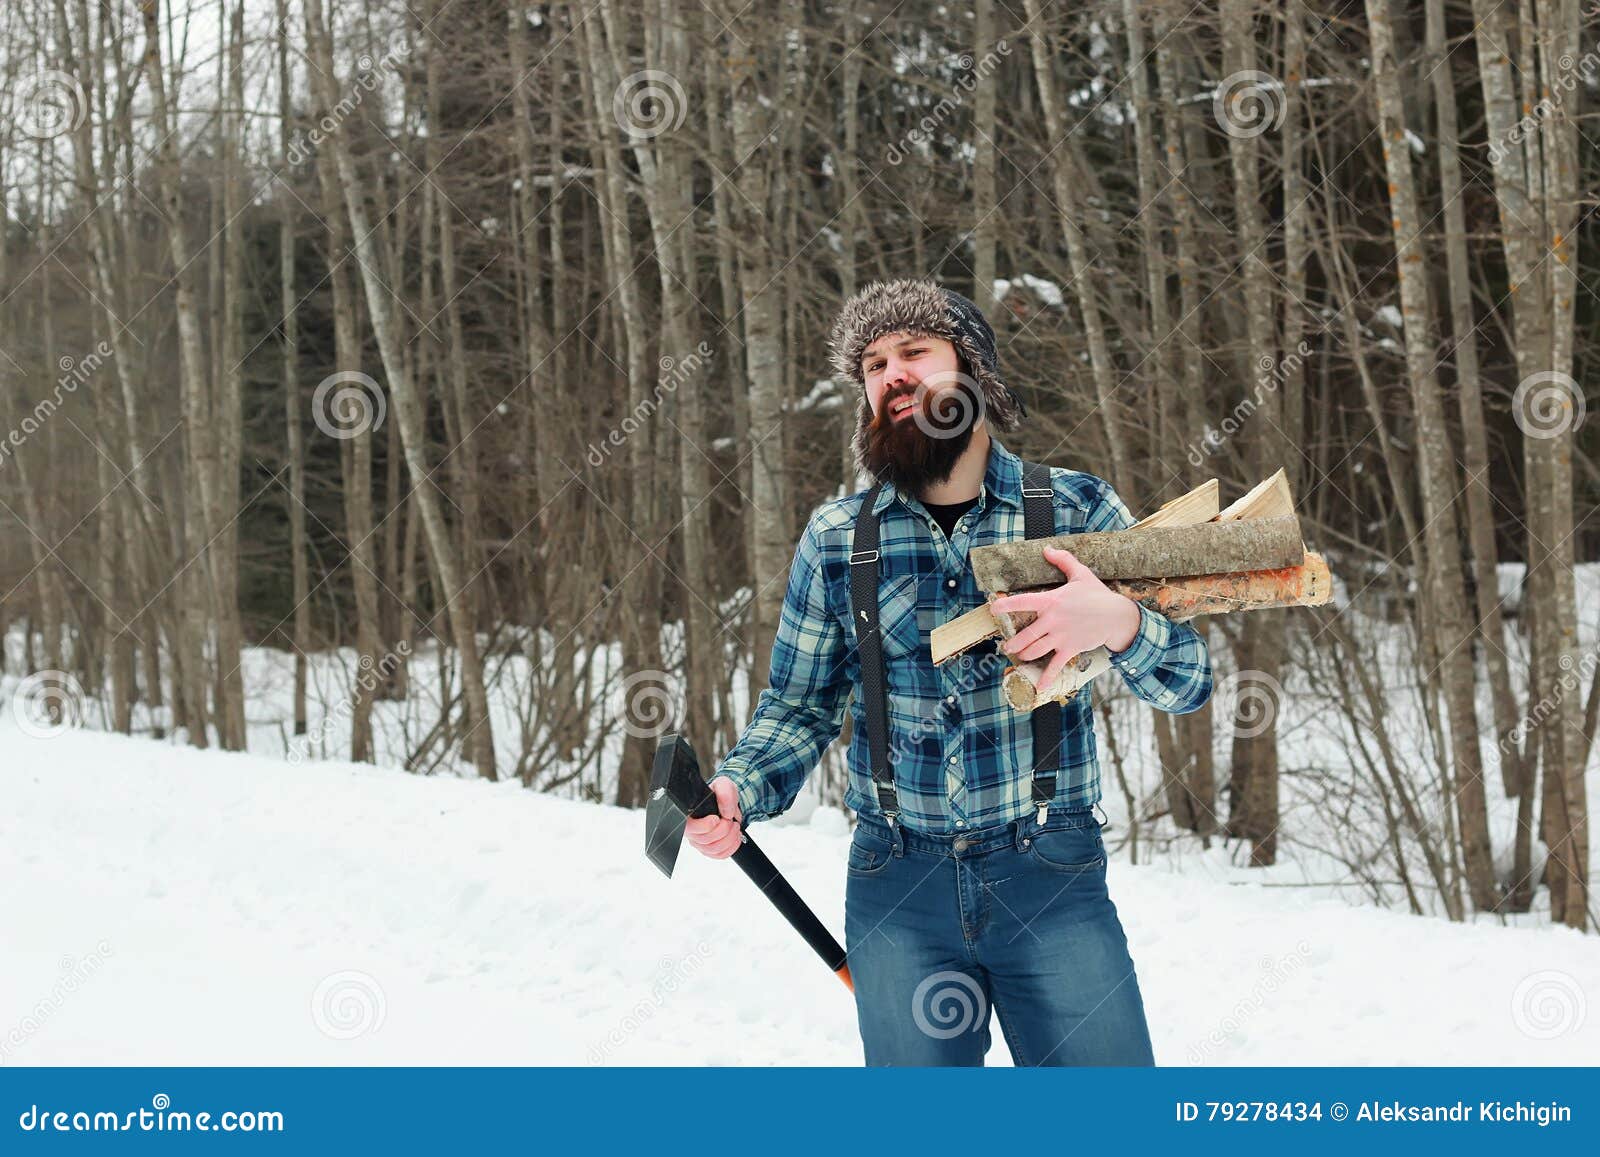 Мужчина с топором сегодня. Мужчина с топором. Дровосек зимой в лесу. Мужская фотосессия с топором в лесу зима. Мужчина с топором лес зима.